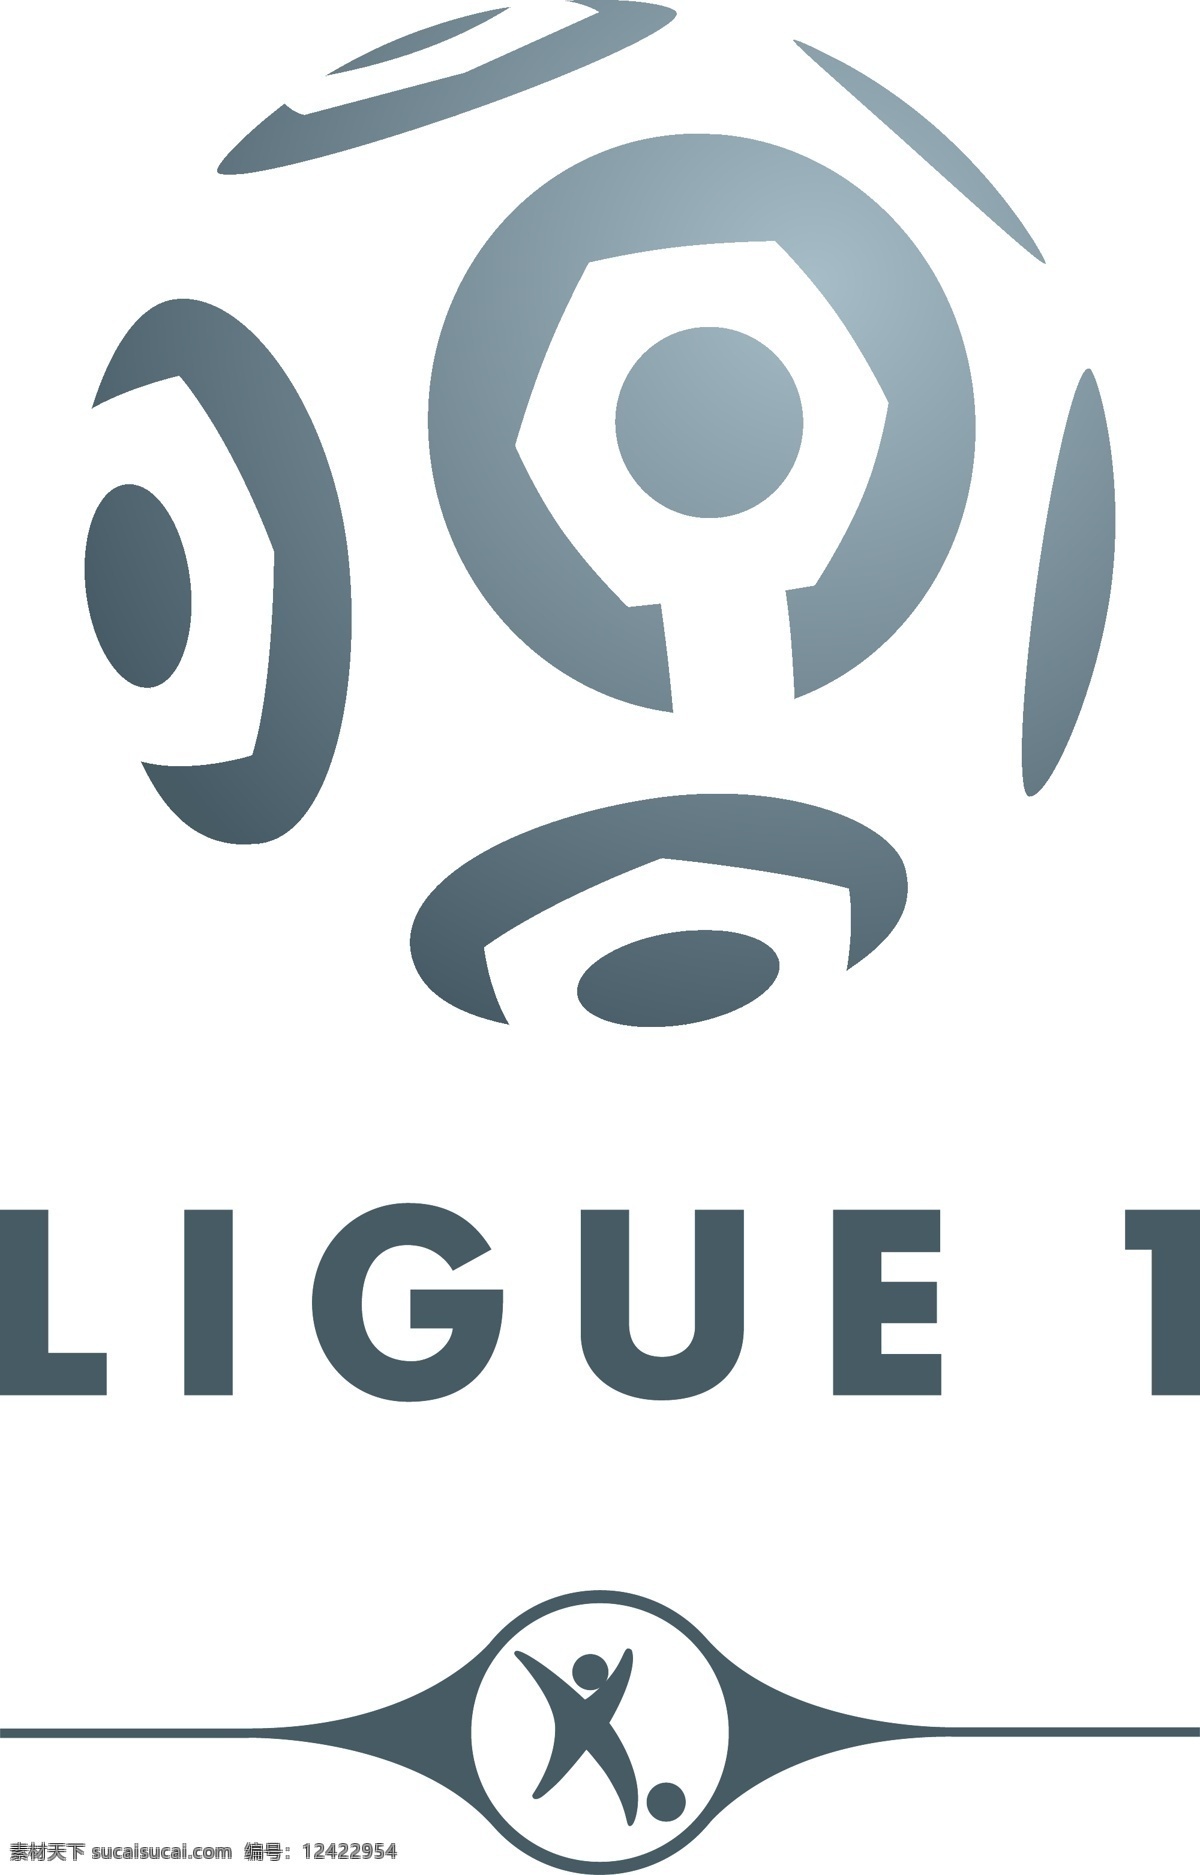 法国 足球 甲级 联赛 标志logo logo 标志 ligue1 职业 soccer 联盟 football 摩纳哥 欧洲 1932 运动会徽 标志图标 企业